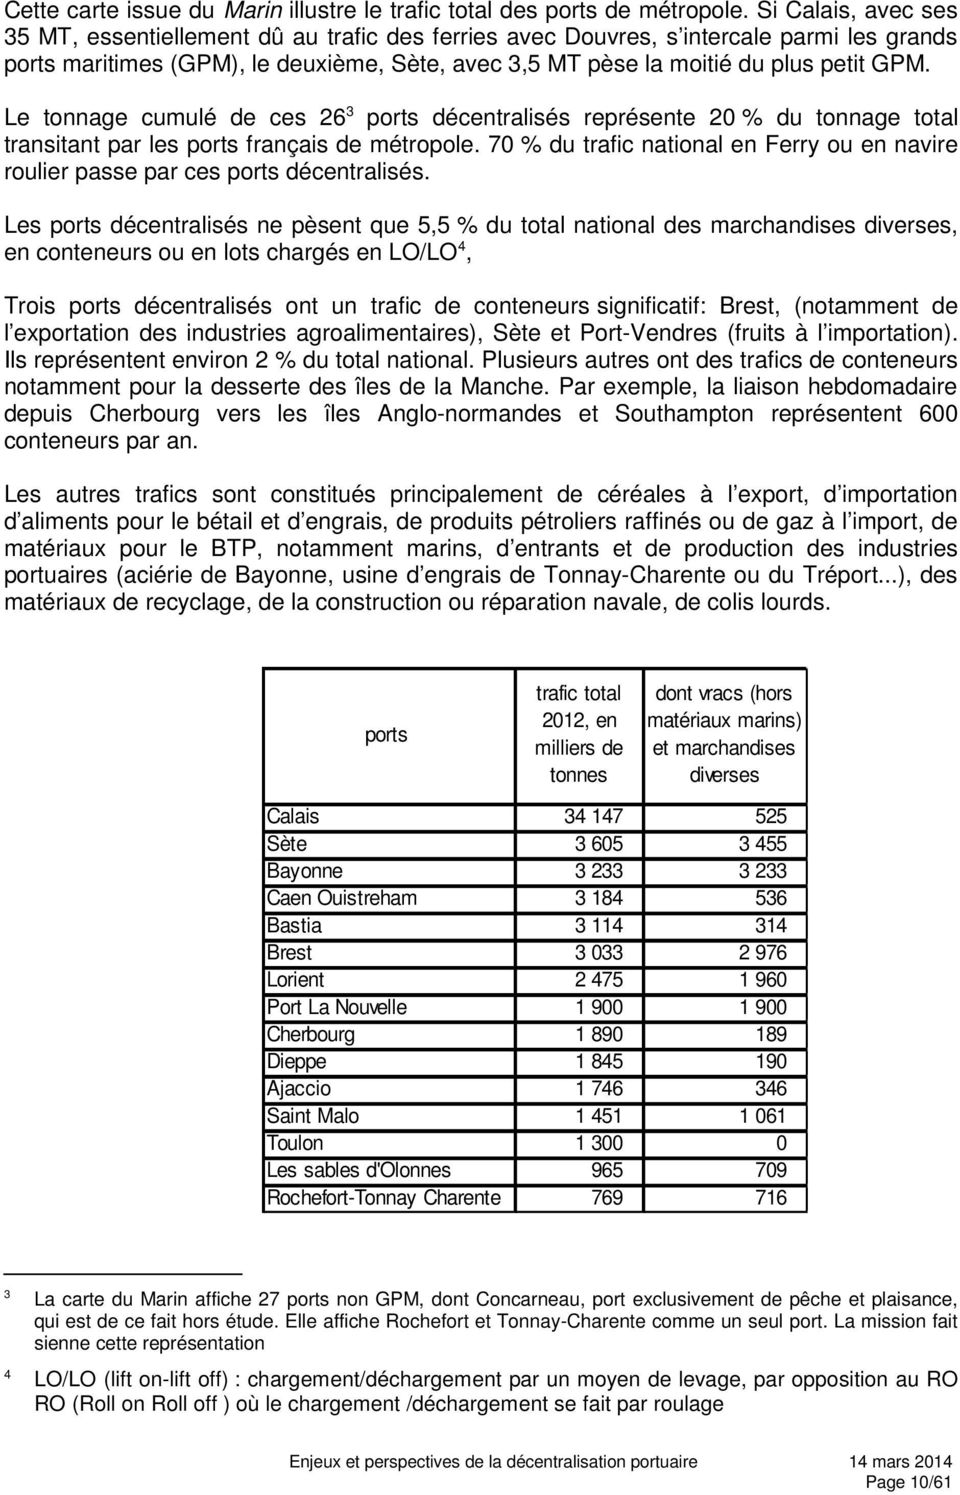 Le tonnage cumulé de ces 26 3 ports décentralisés représente 20 % du tonnage total transitant par les ports français de métropole.